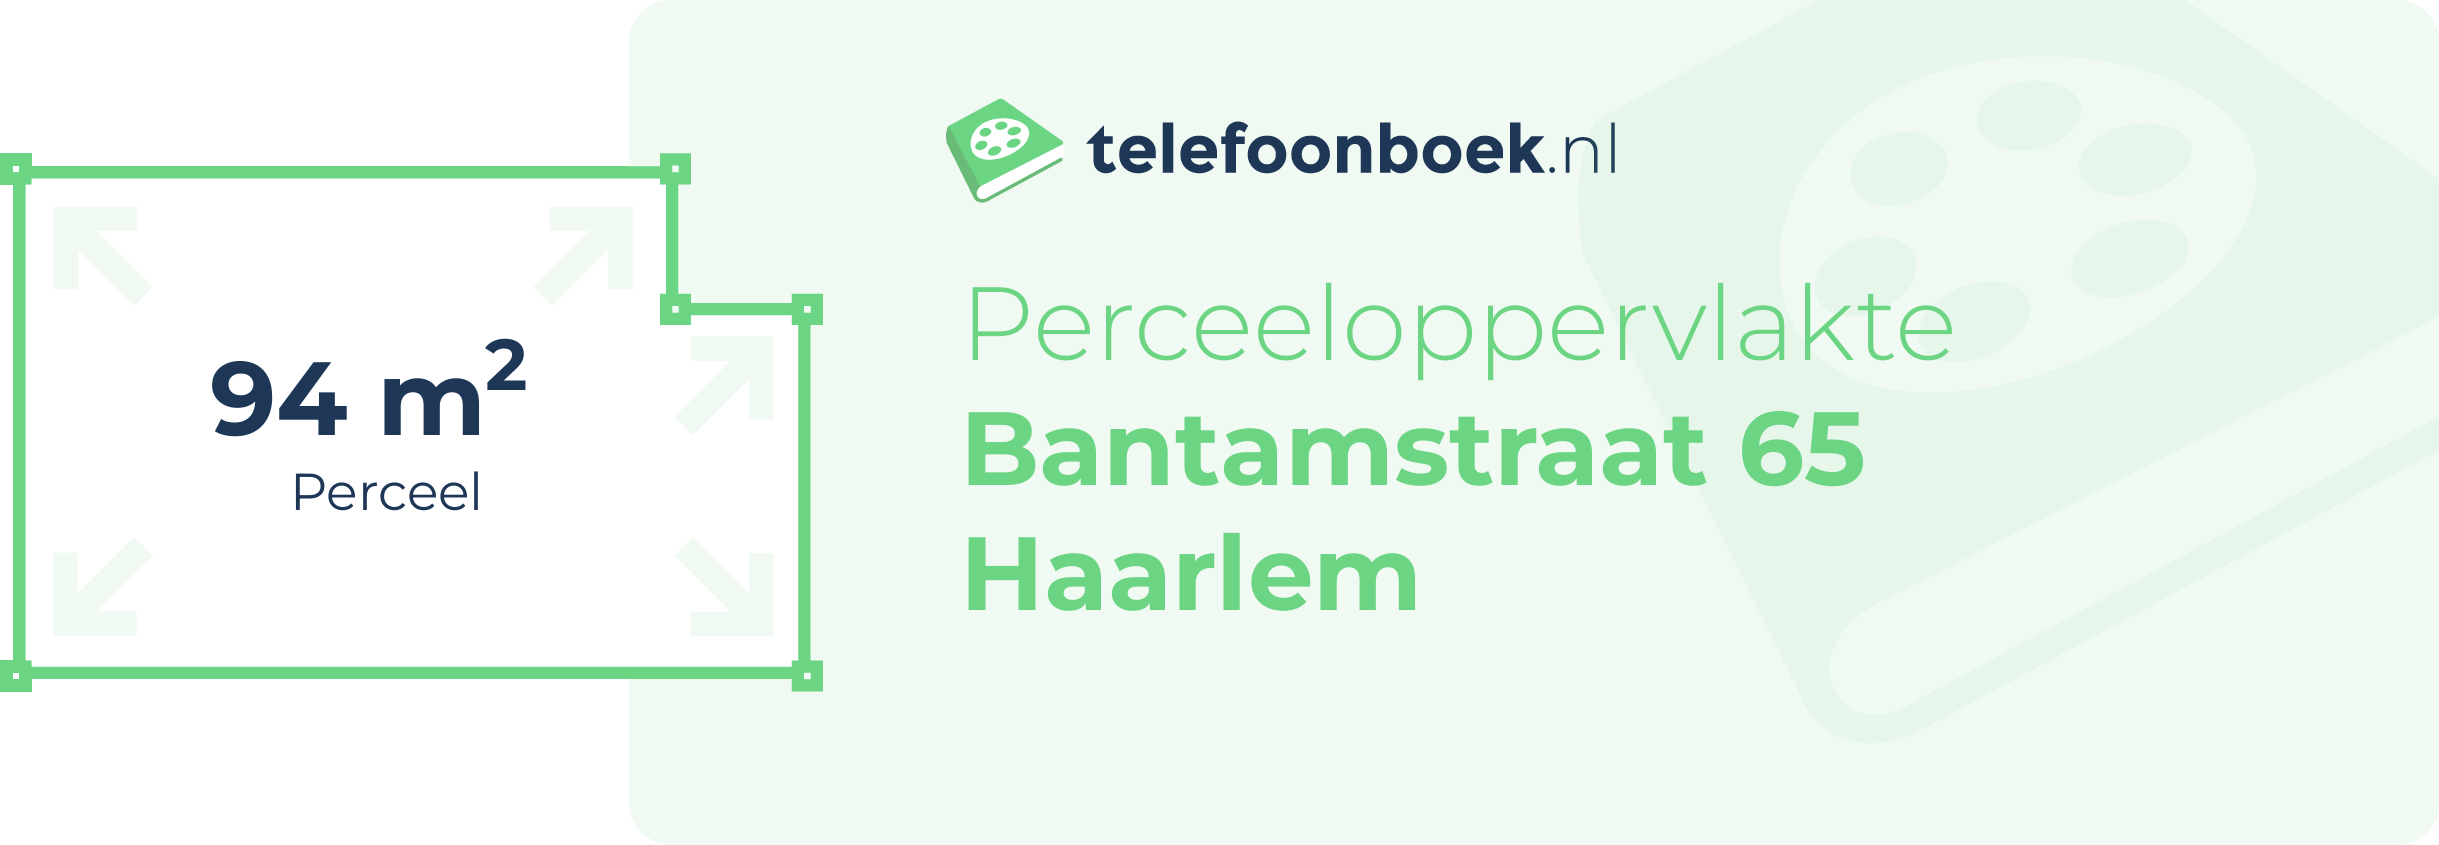 Perceeloppervlakte Bantamstraat 65 Haarlem